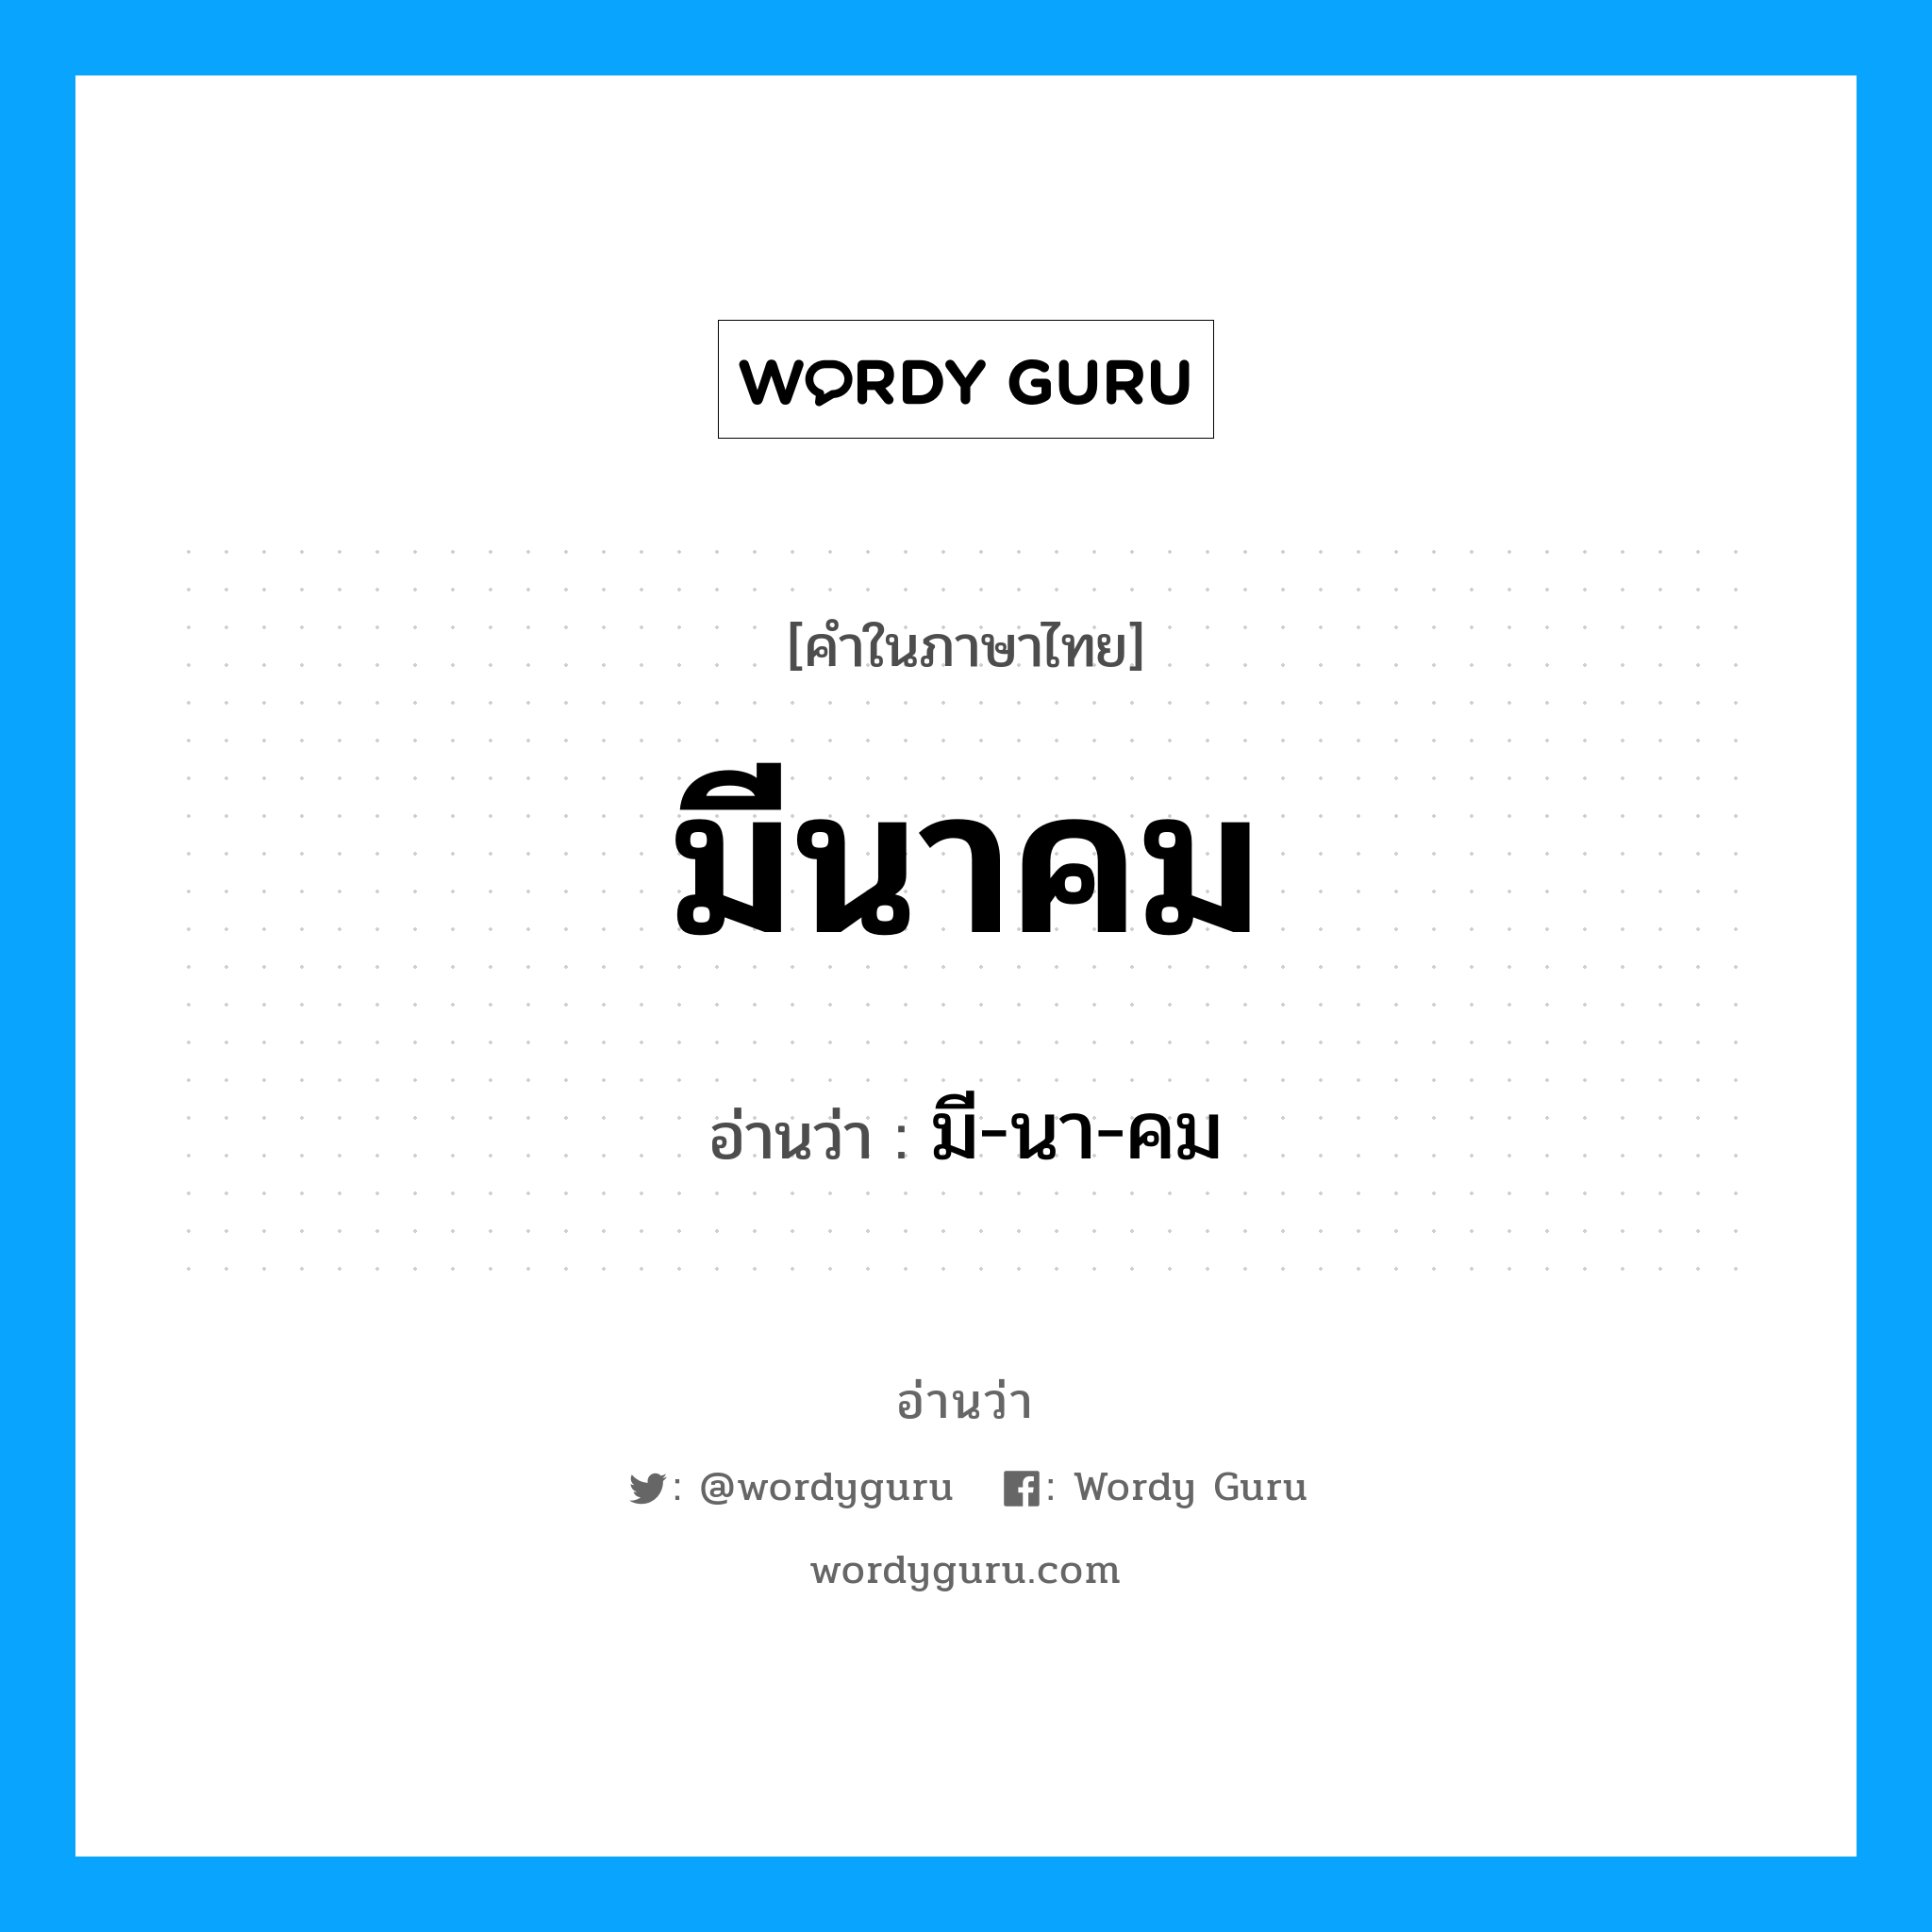 มี-นา-คม เป็นคำอ่านของคำไหน?, คำในภาษาไทย มี-นา-คม อ่านว่า มีนาคม หมวด เดือน หมวด เดือน